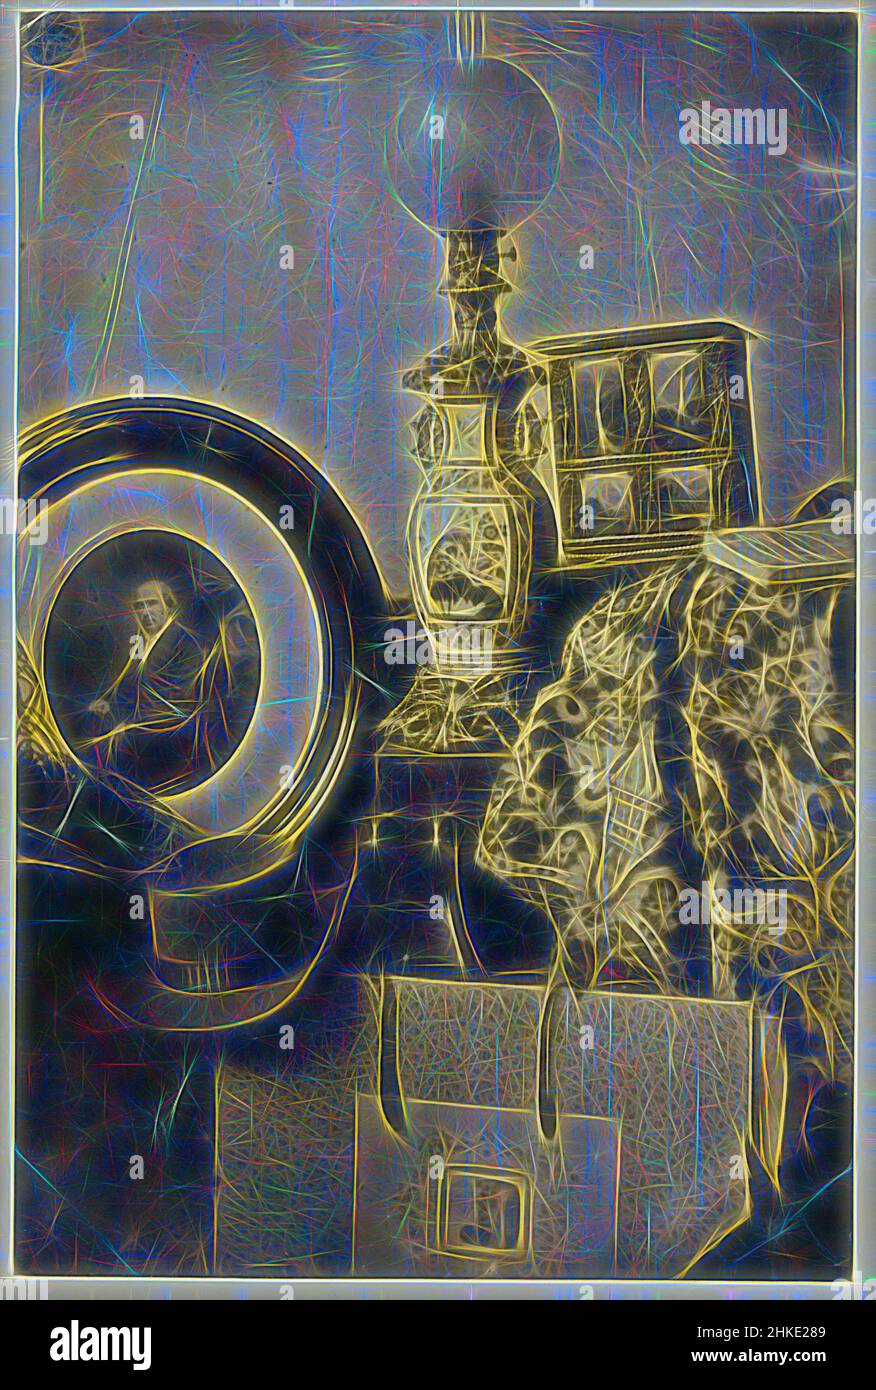 Inspirado en la vida fija con retrato fotográfico de Asser, estereoscopio y portafolio, Eduard Isaac Asser, Amsterdam, c. 1855, papel, impresión de papel salado, altura 187 mm x anchura 123 mm, Reimaginado por Artotop. Arte clásico reinventado con un toque moderno. Diseño de brillo cálido y alegre y luminosidad e radiación de rayos de luz. Fotografía inspirada en el surrealismo y el futurismo, que abarca la energía dinámica de la tecnología moderna, el movimiento, la velocidad y la revolución de la cultura Foto de stock